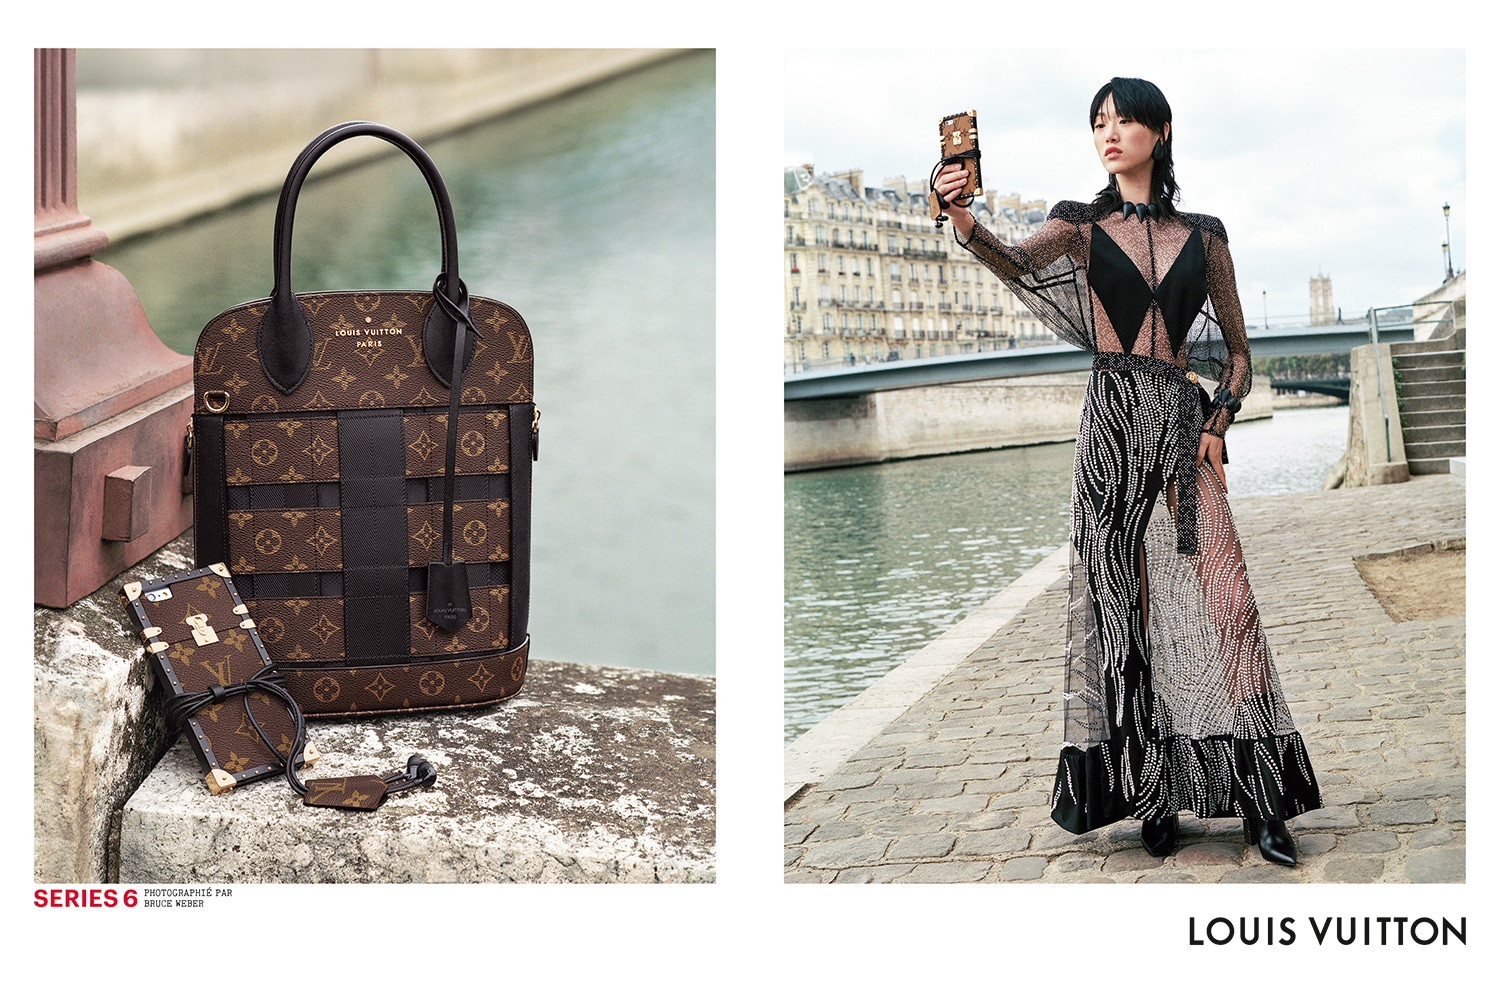 Louis Vuitton F/W 2017 Series 7 Campaign (Louis Vuitton)